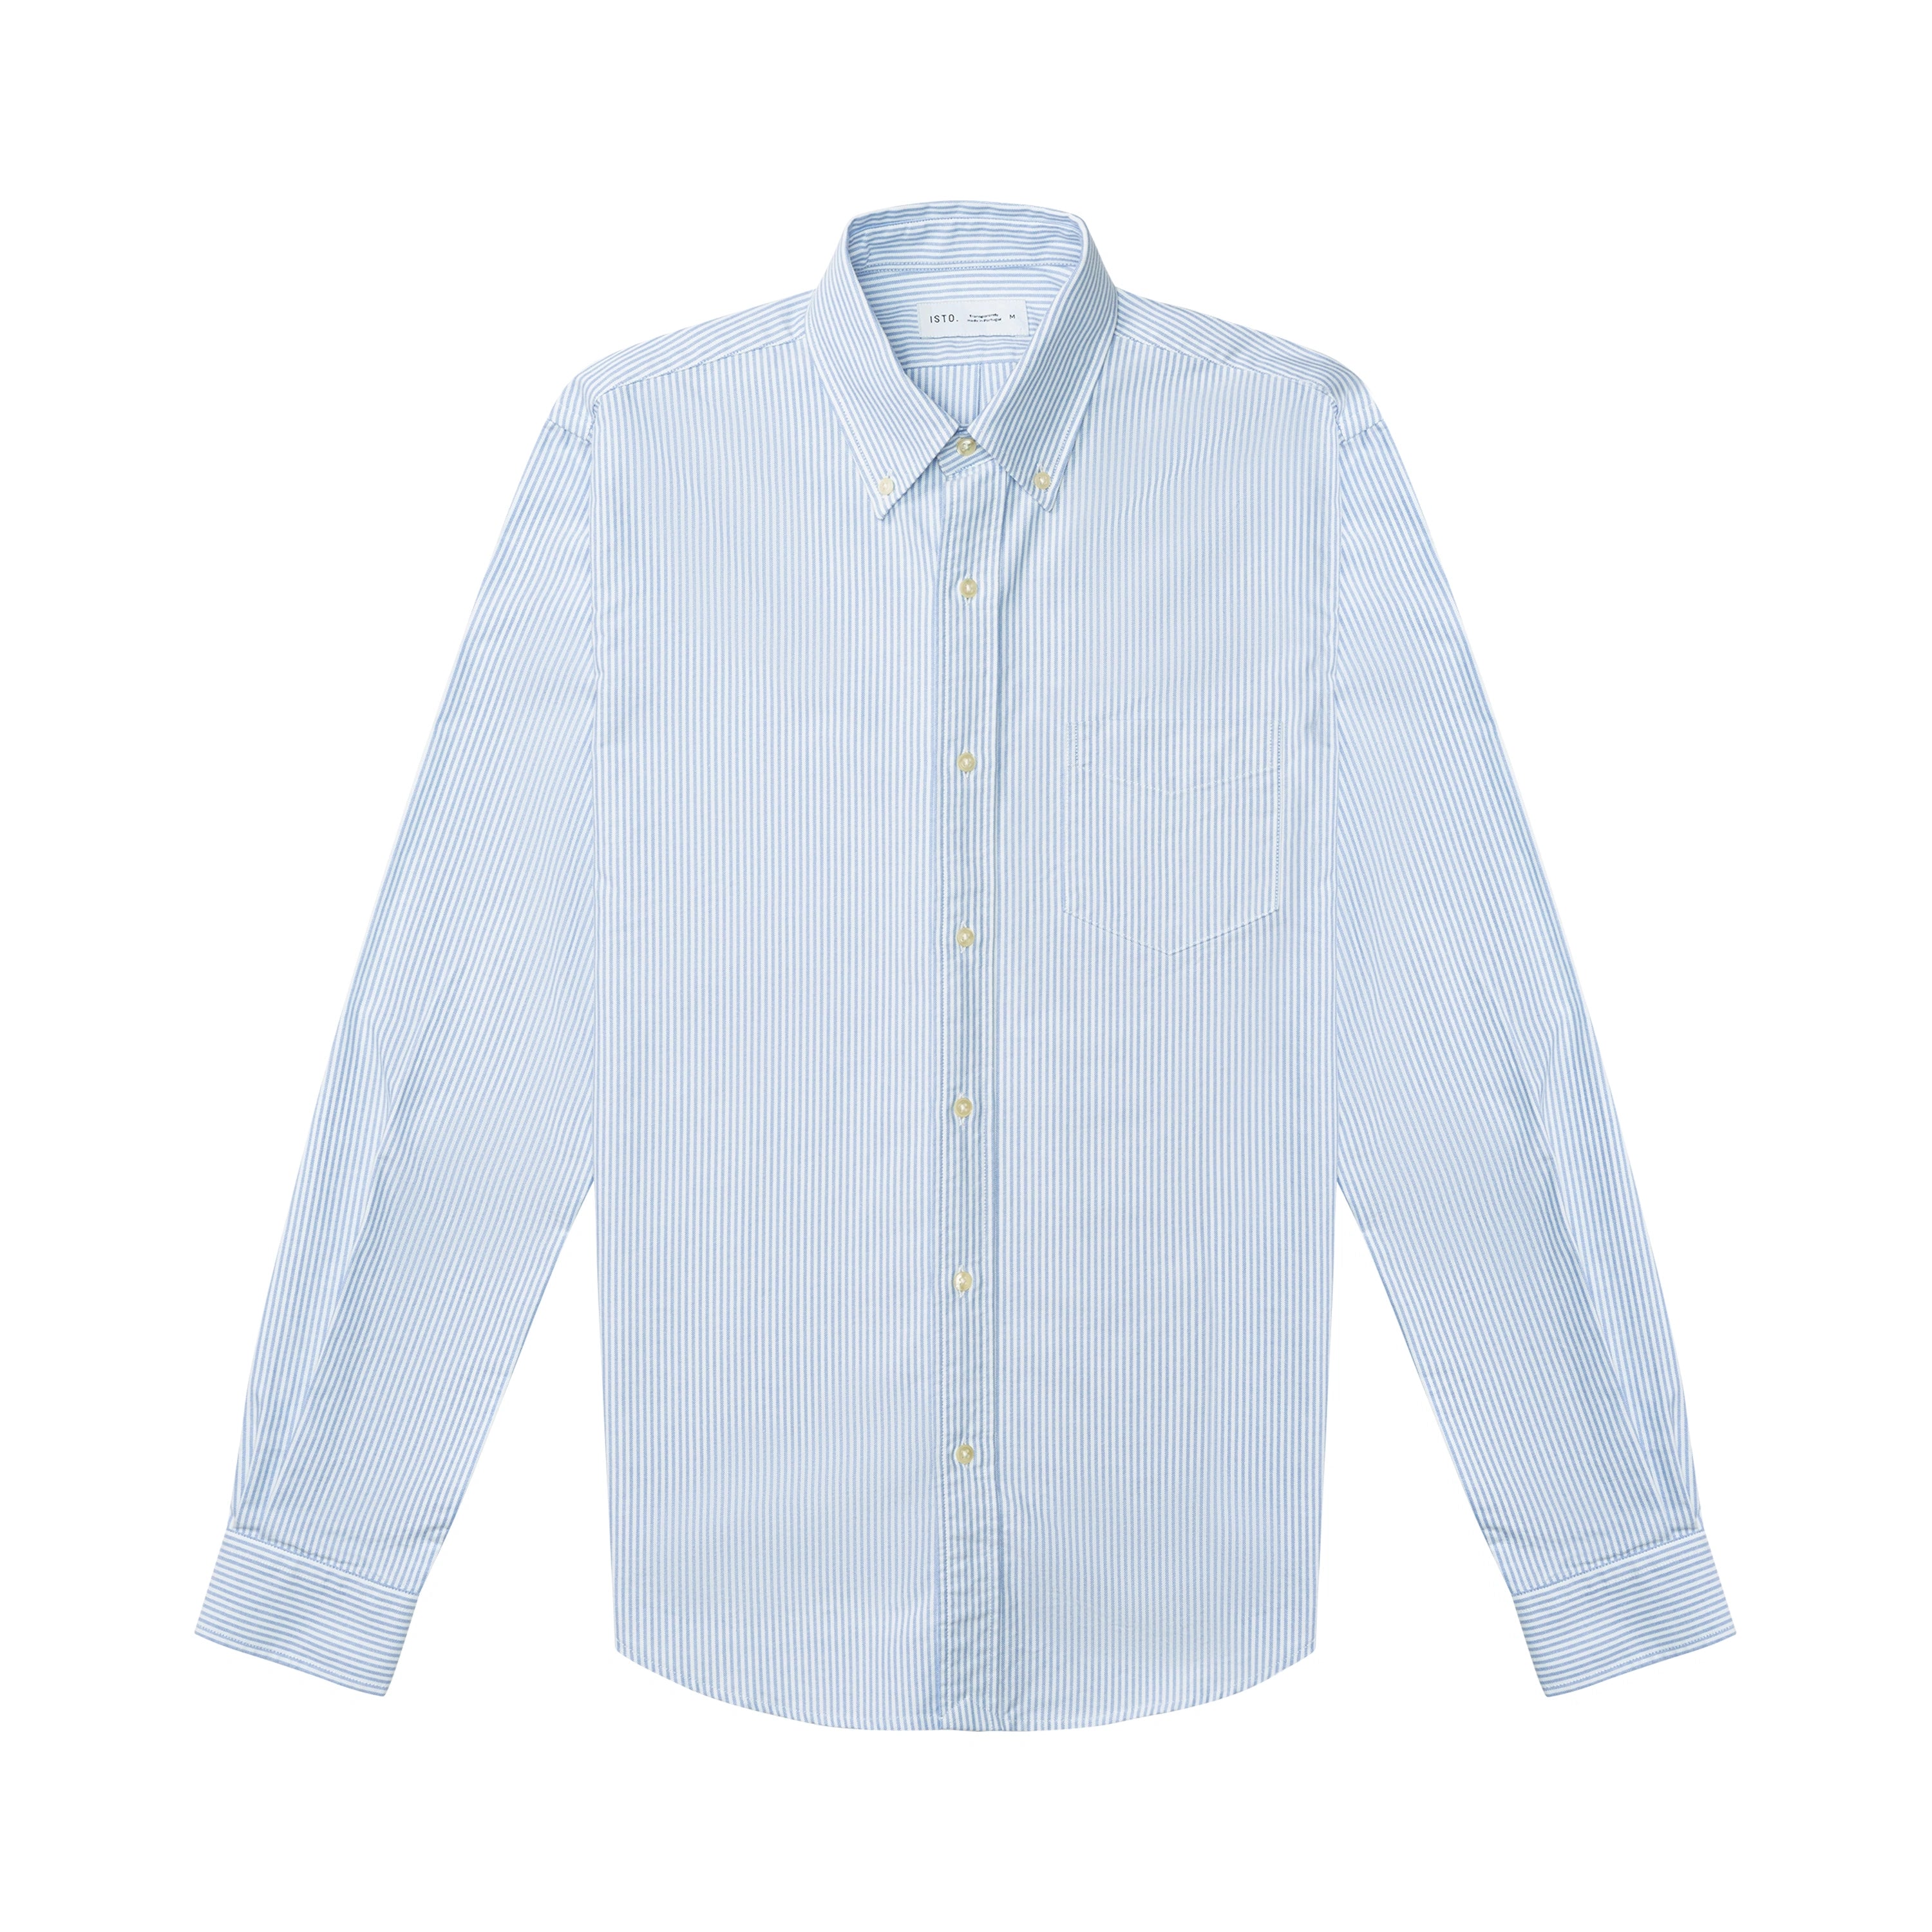 Men's Oxford Shirt White & Navy - Organic Cotton | ISTO.